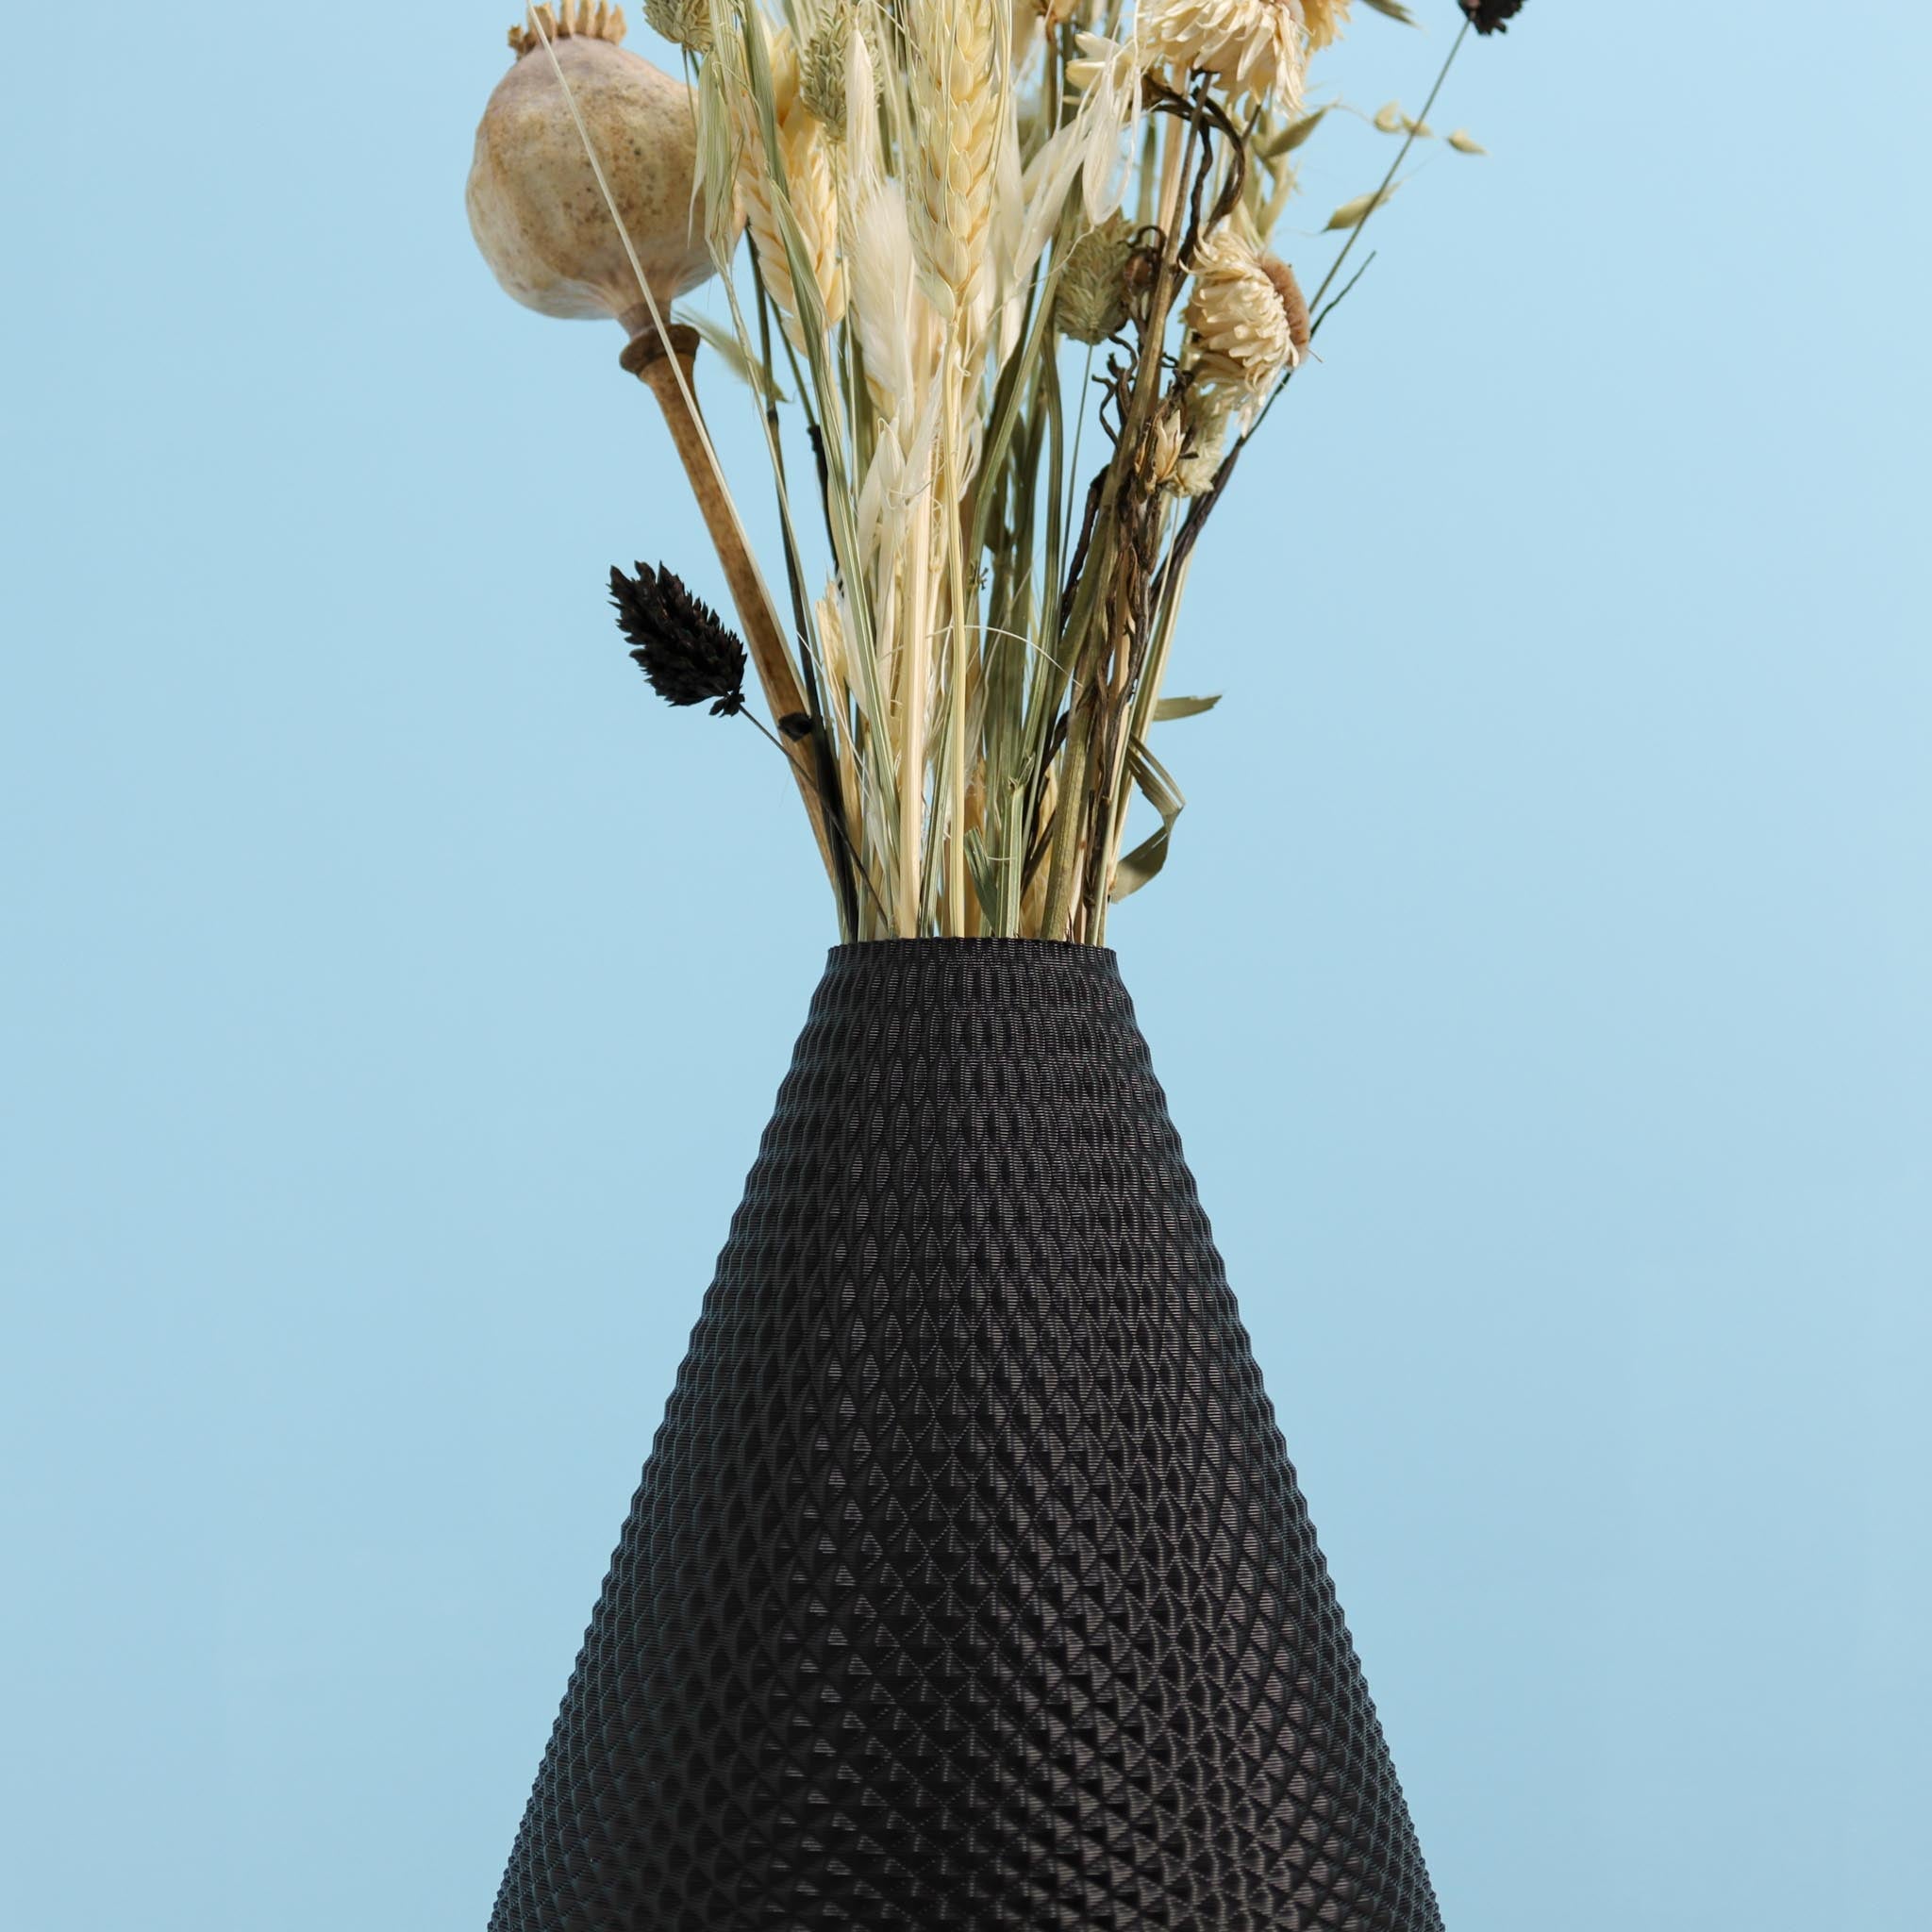 Bud Vase DROPLET, 30 - 45 cm - Slimprint